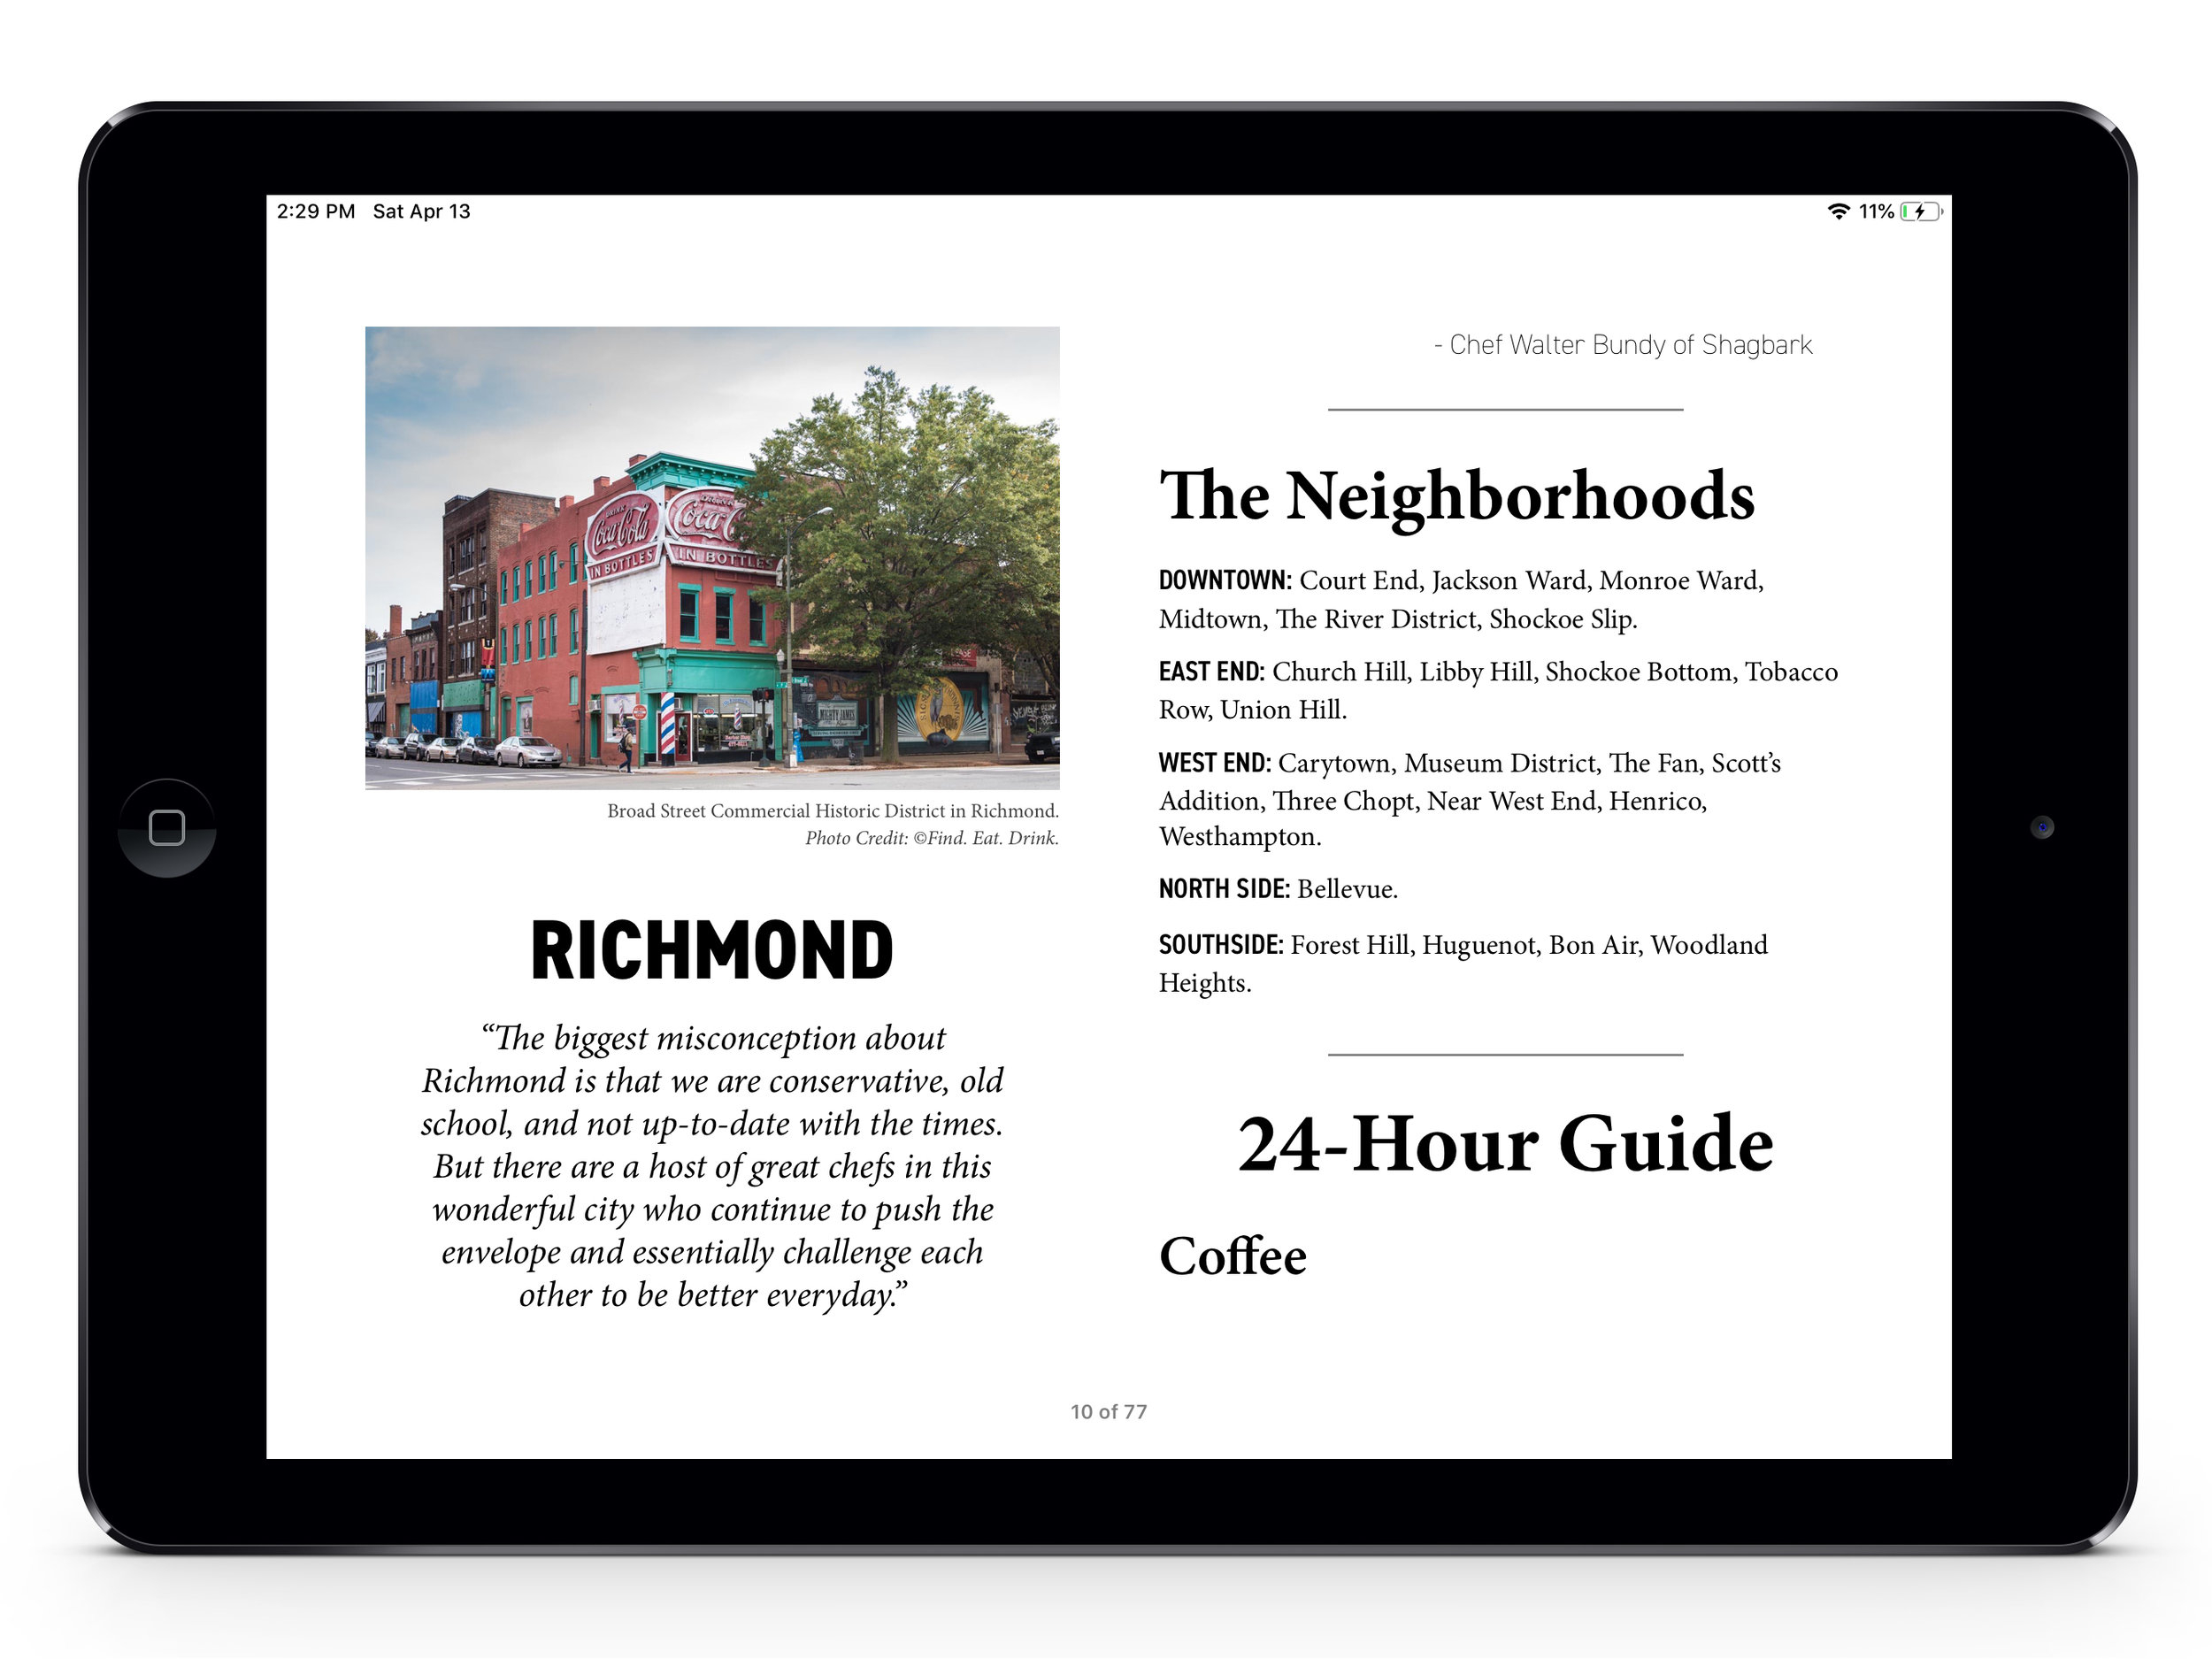 iPadAir_Richmond_Screenshots_Landscape_1.4.jpg